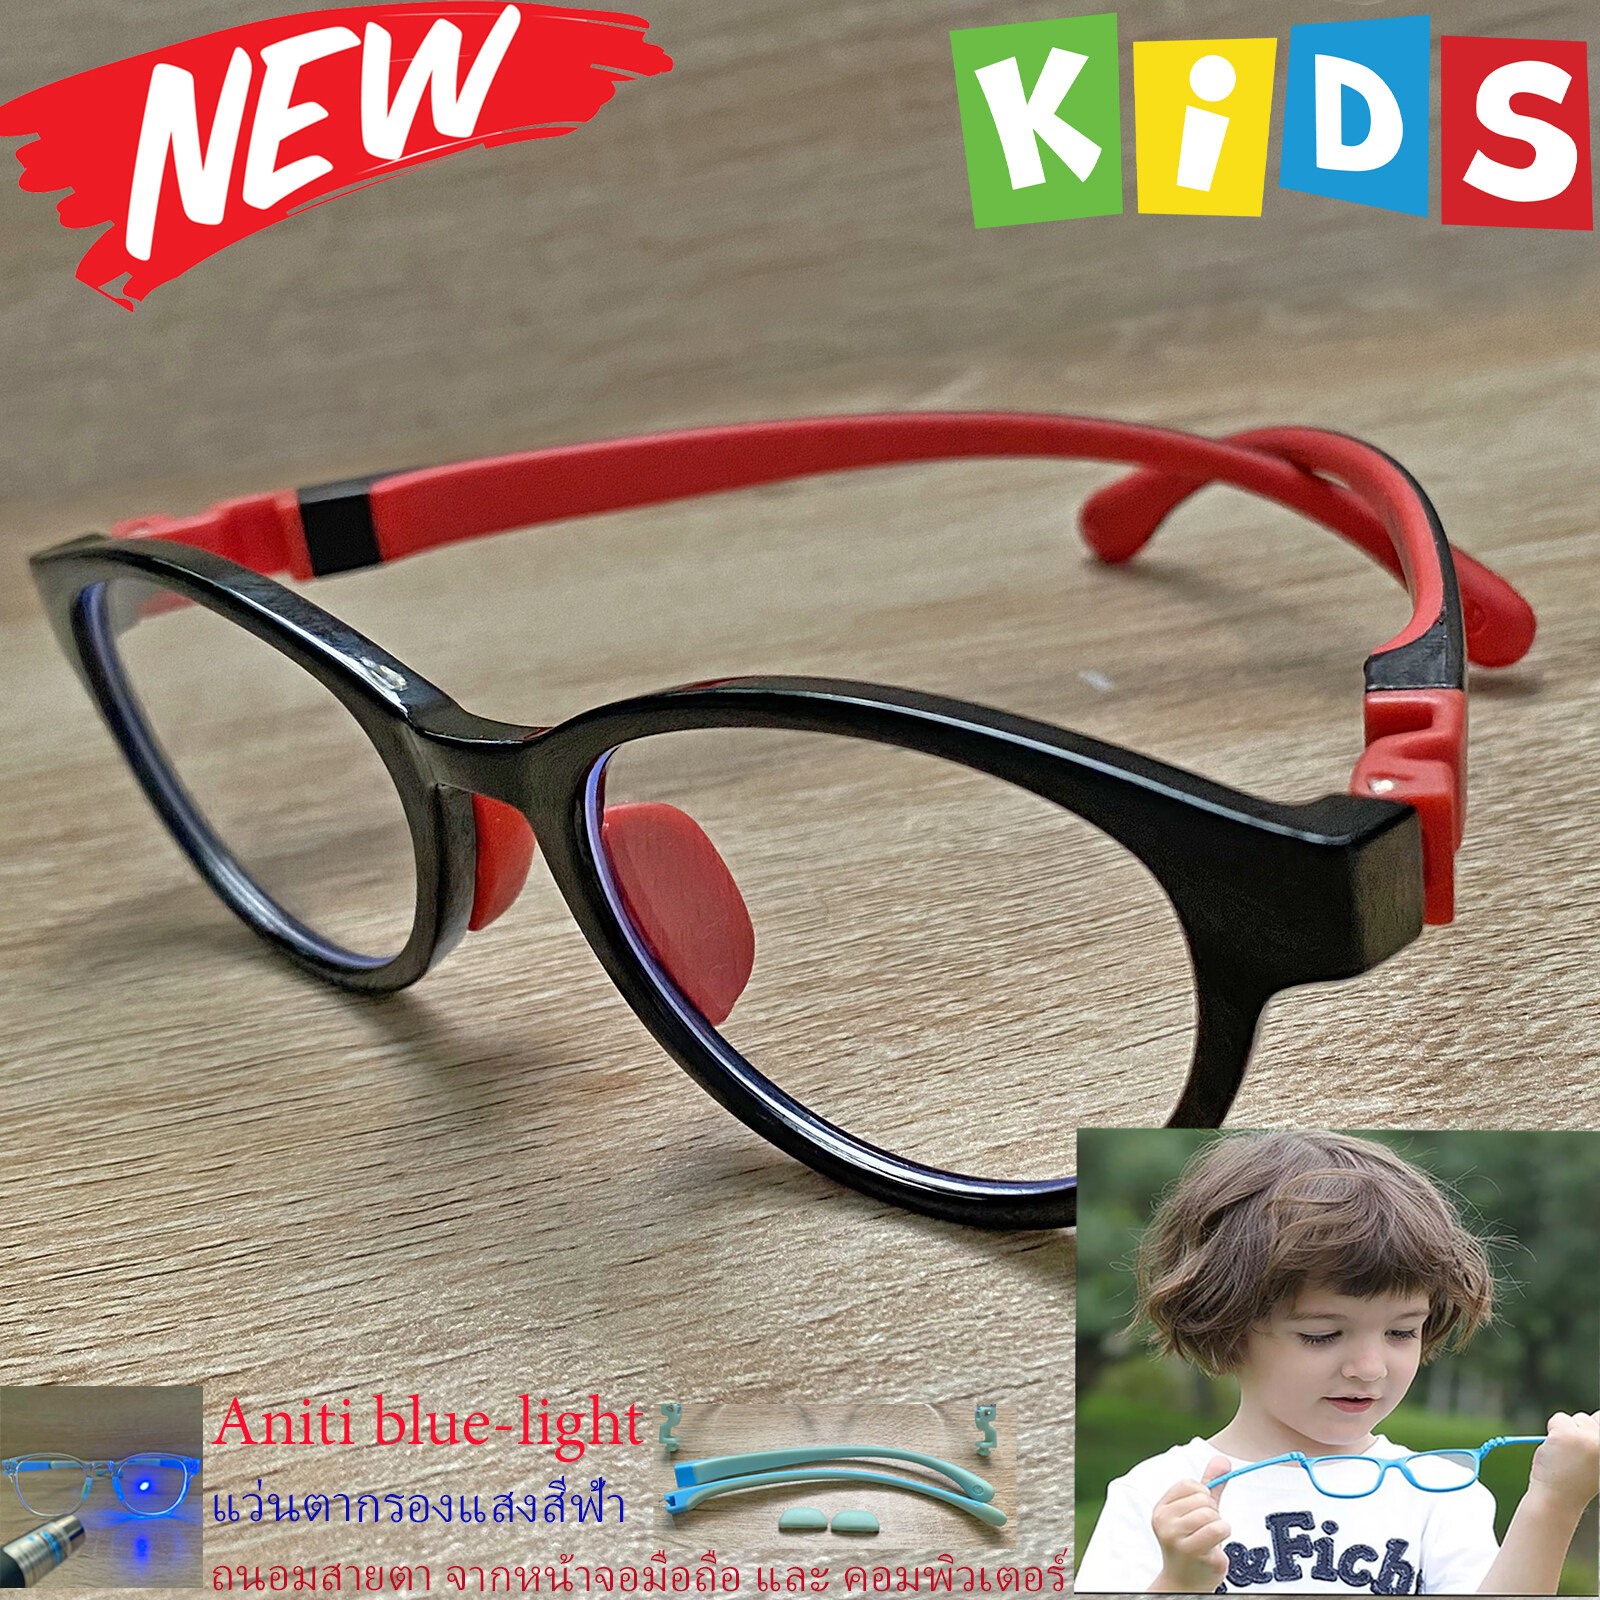 กรอบแว่นตาเด็ก กรองแสง สีฟ้า blue block แว่นเด็ก บลูบล็อค รุ่น 05 สีดำ ขาข้อต่อยืดหยุ่น ถอดขาเปลี่ยนได้ วัสดุTR90 เหมาะสำหรับเลนส์สายตา